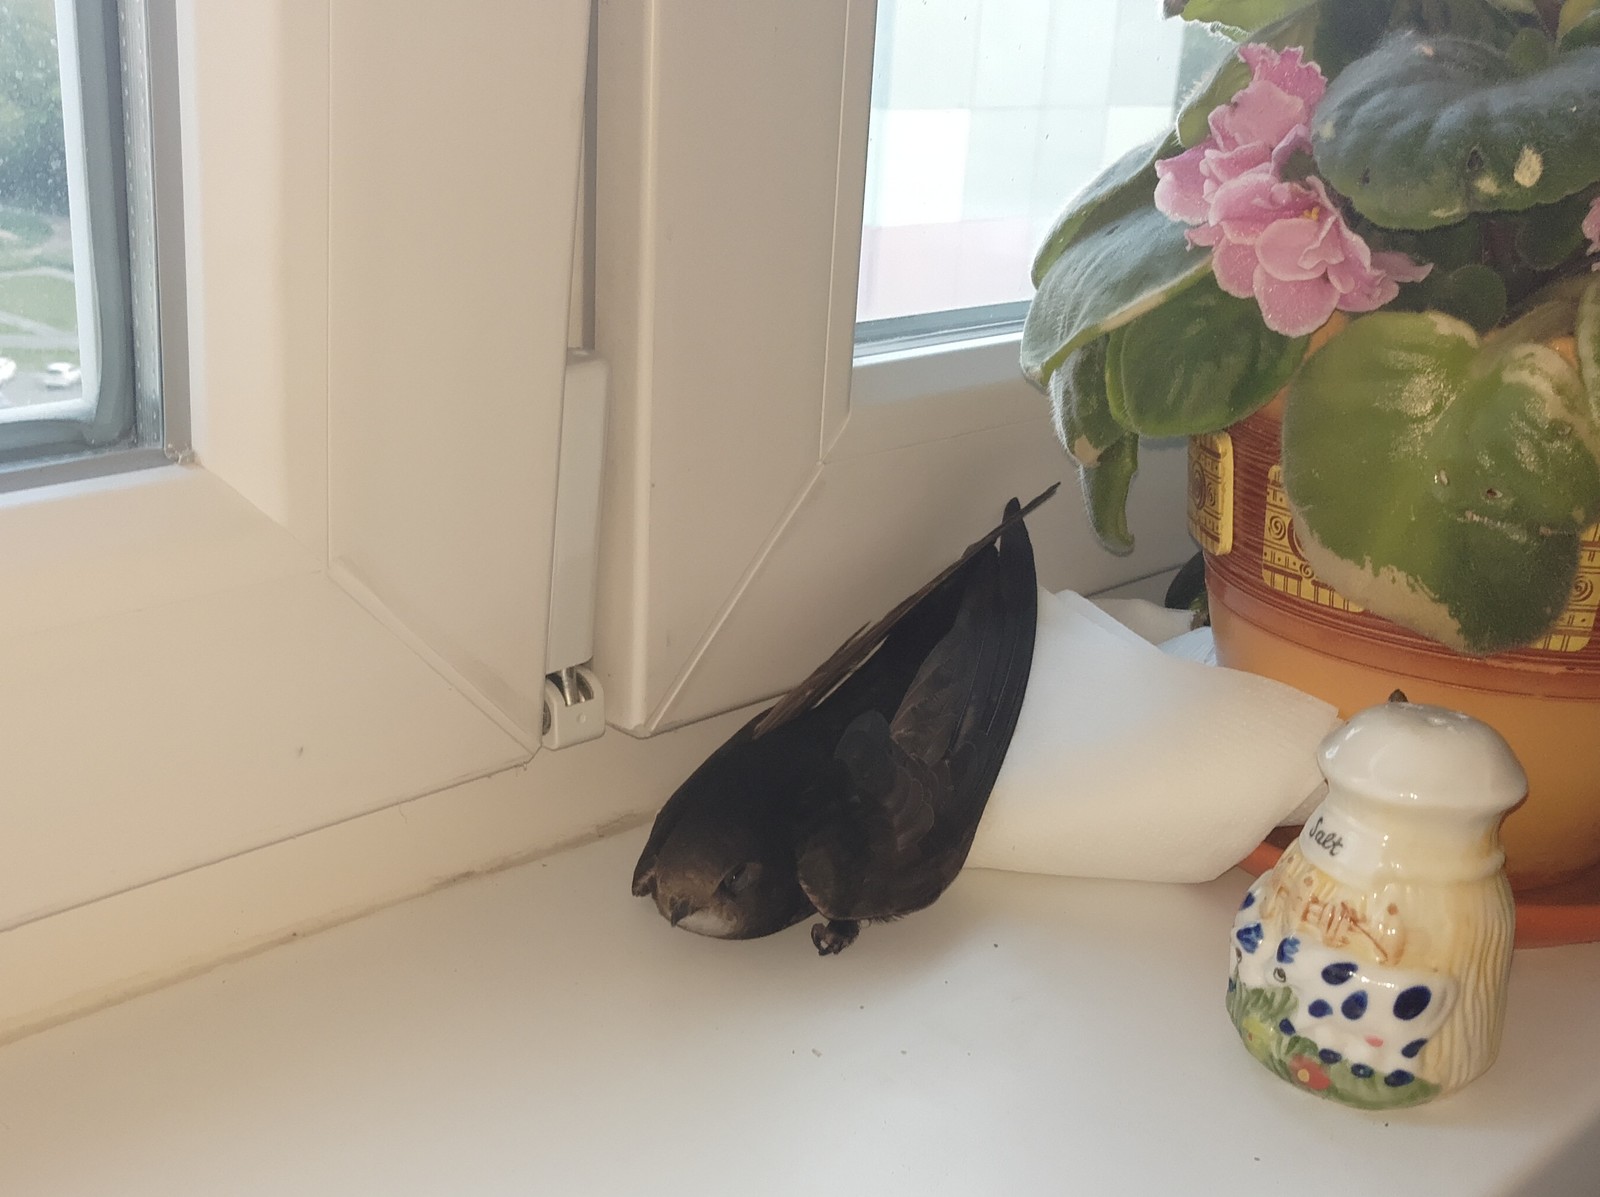 Птица залетела в квартиру. Бабочка залетела в дом. Голубь залетел в квартиру. Залетела бабочка в окно. Птица залетела в дом.